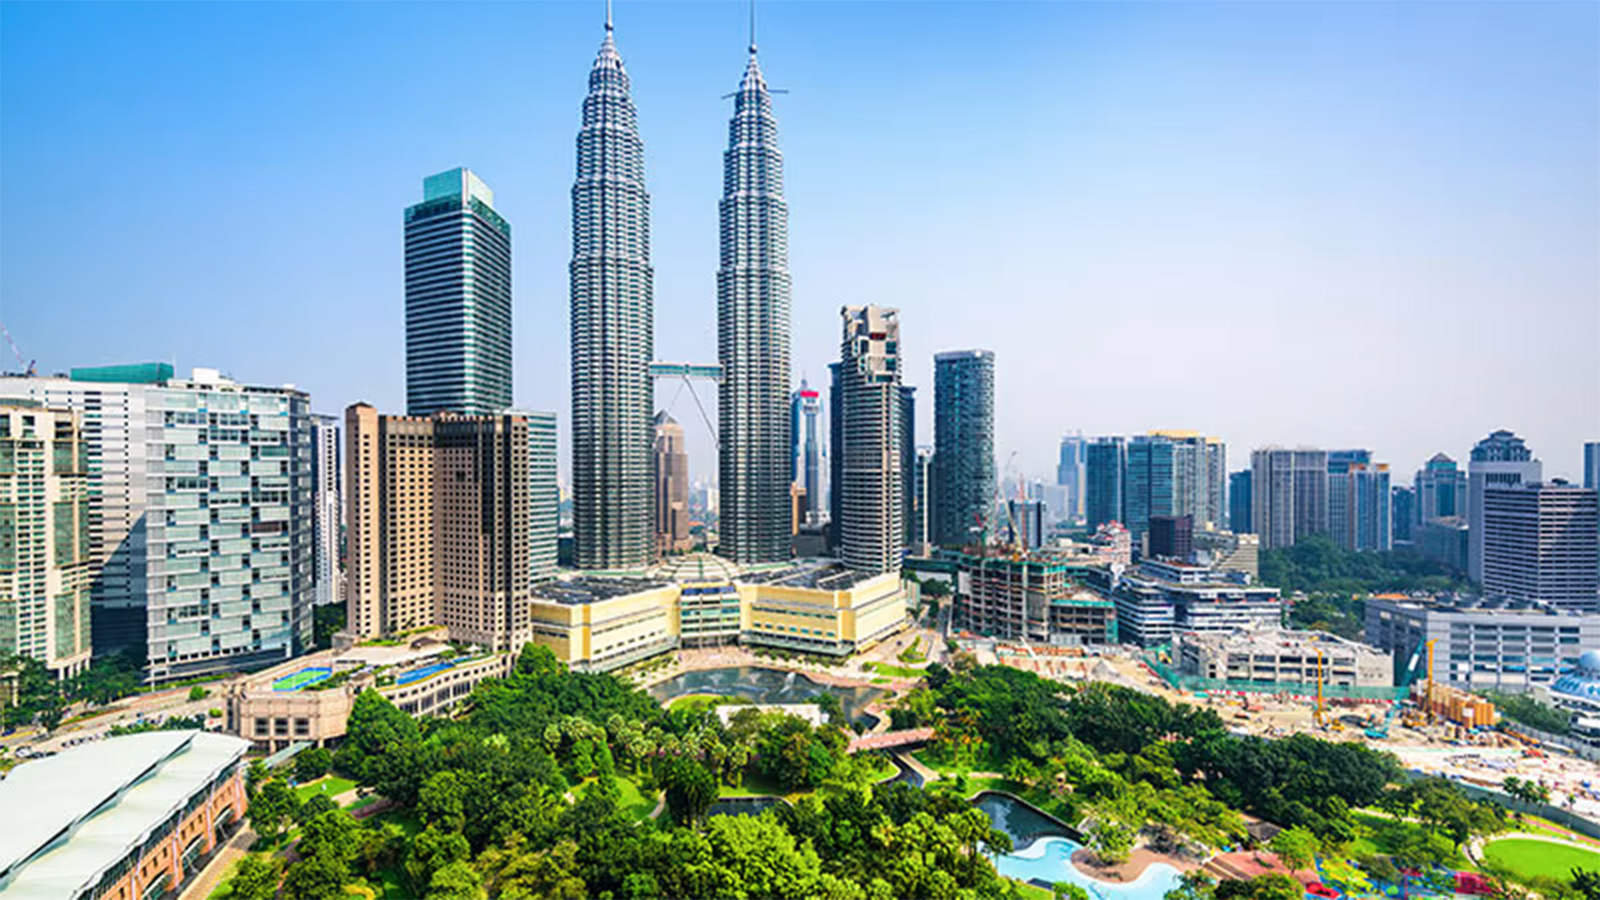 Petronas Twin Towers in Kuala Lumpur Malaysia